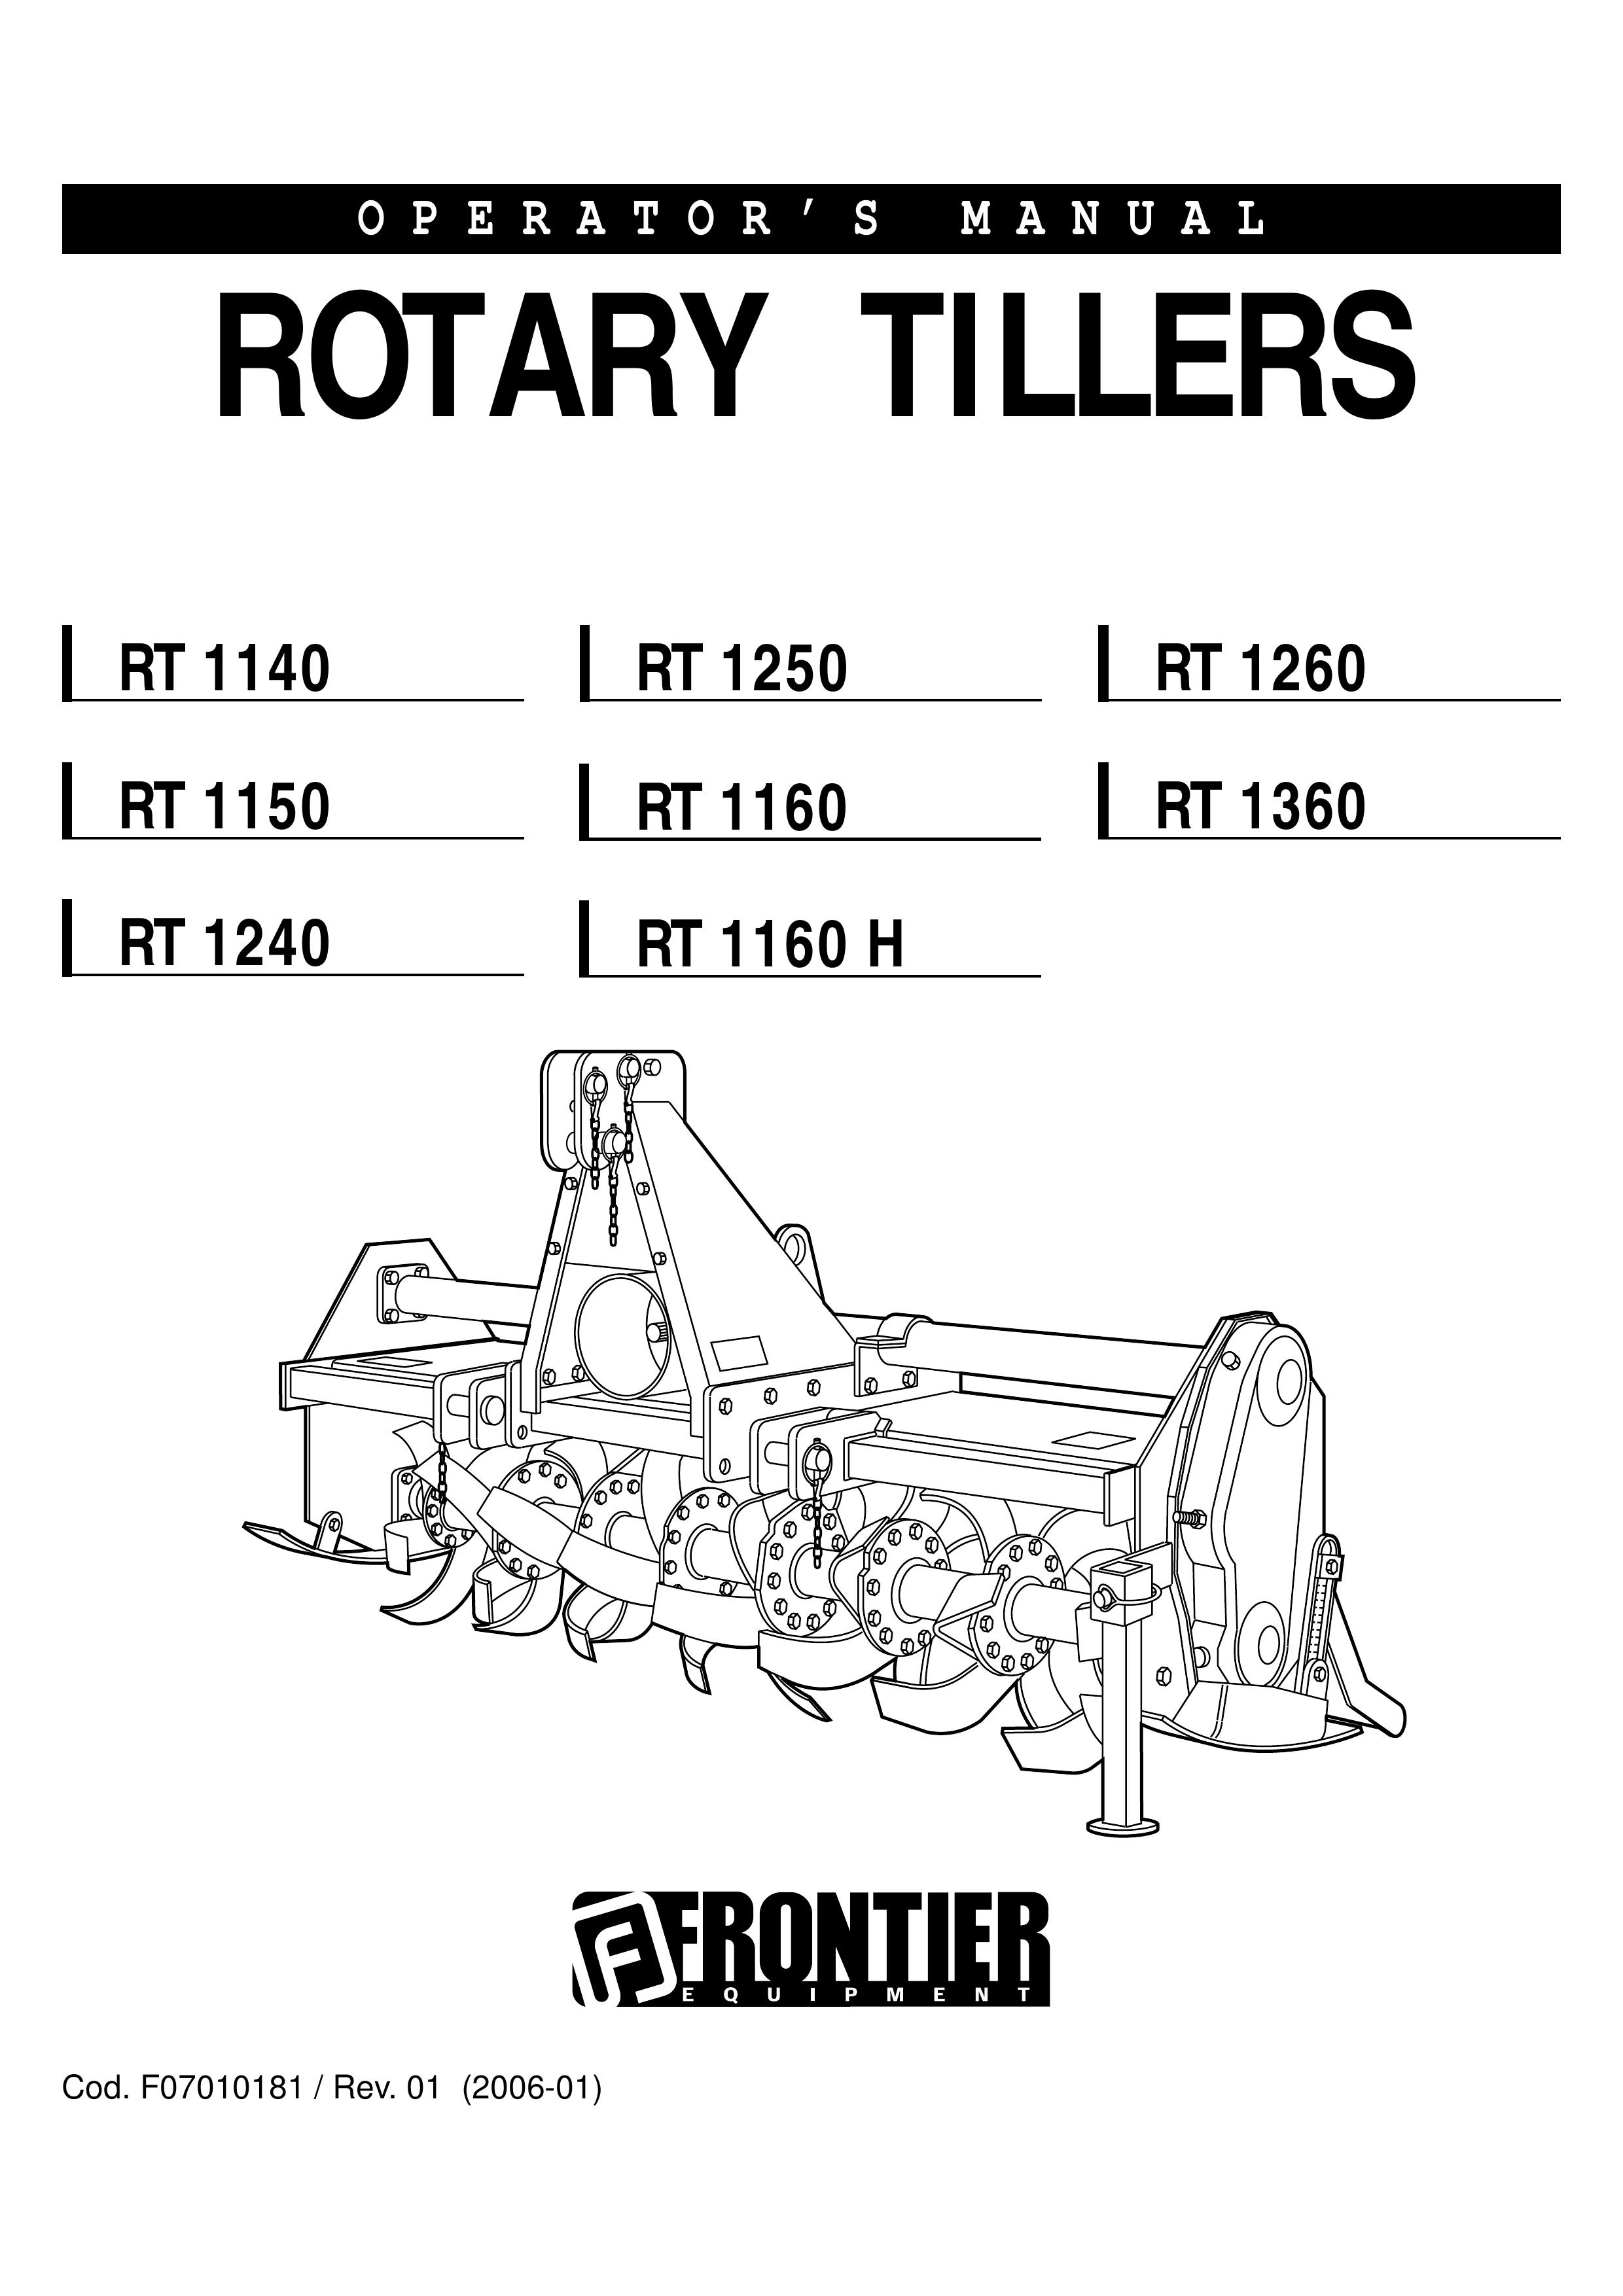 John Deere RT1240 Tiller User Manual